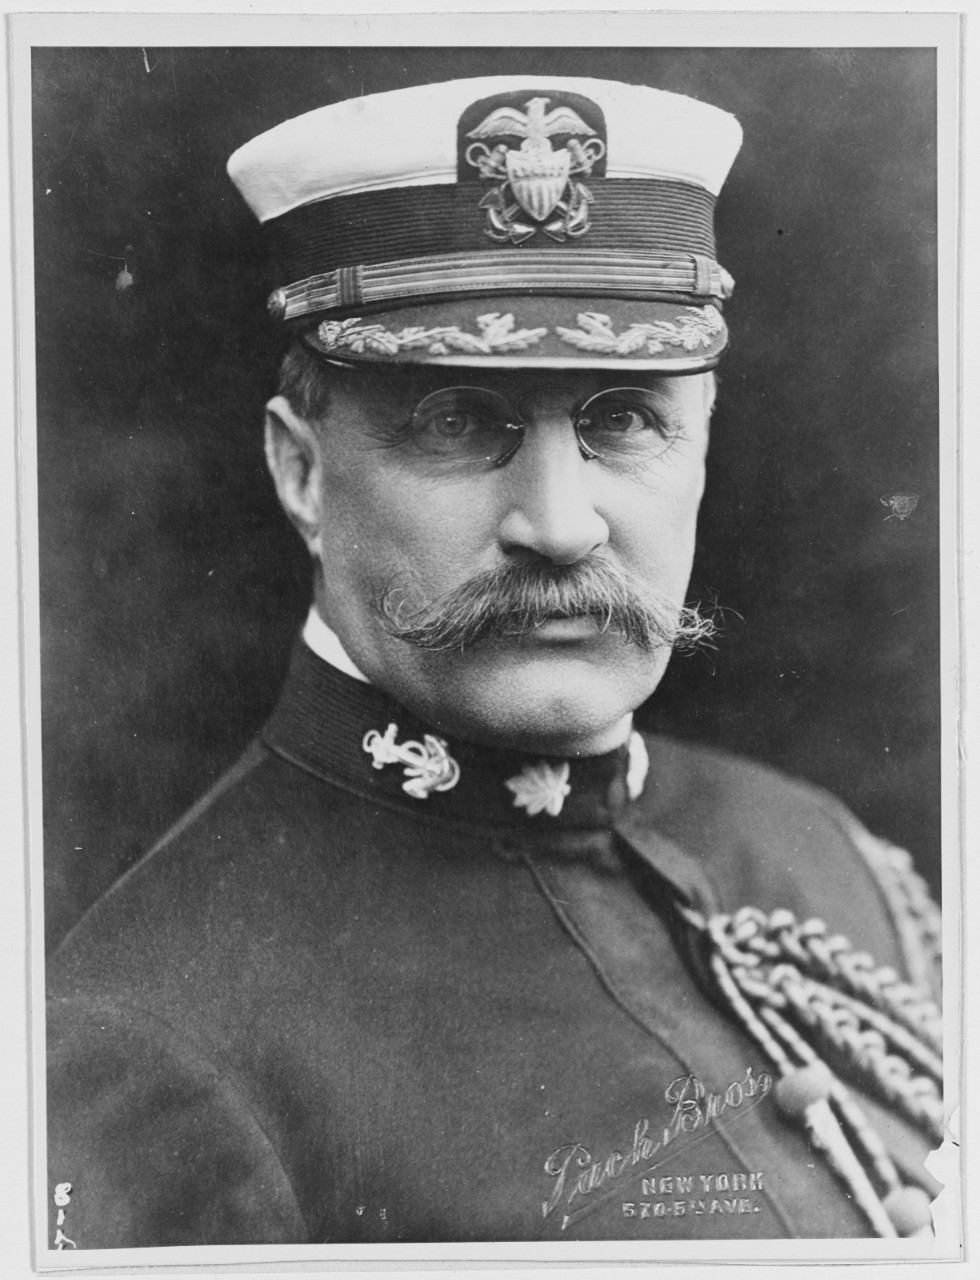 Commander Albert W. Grant, USN